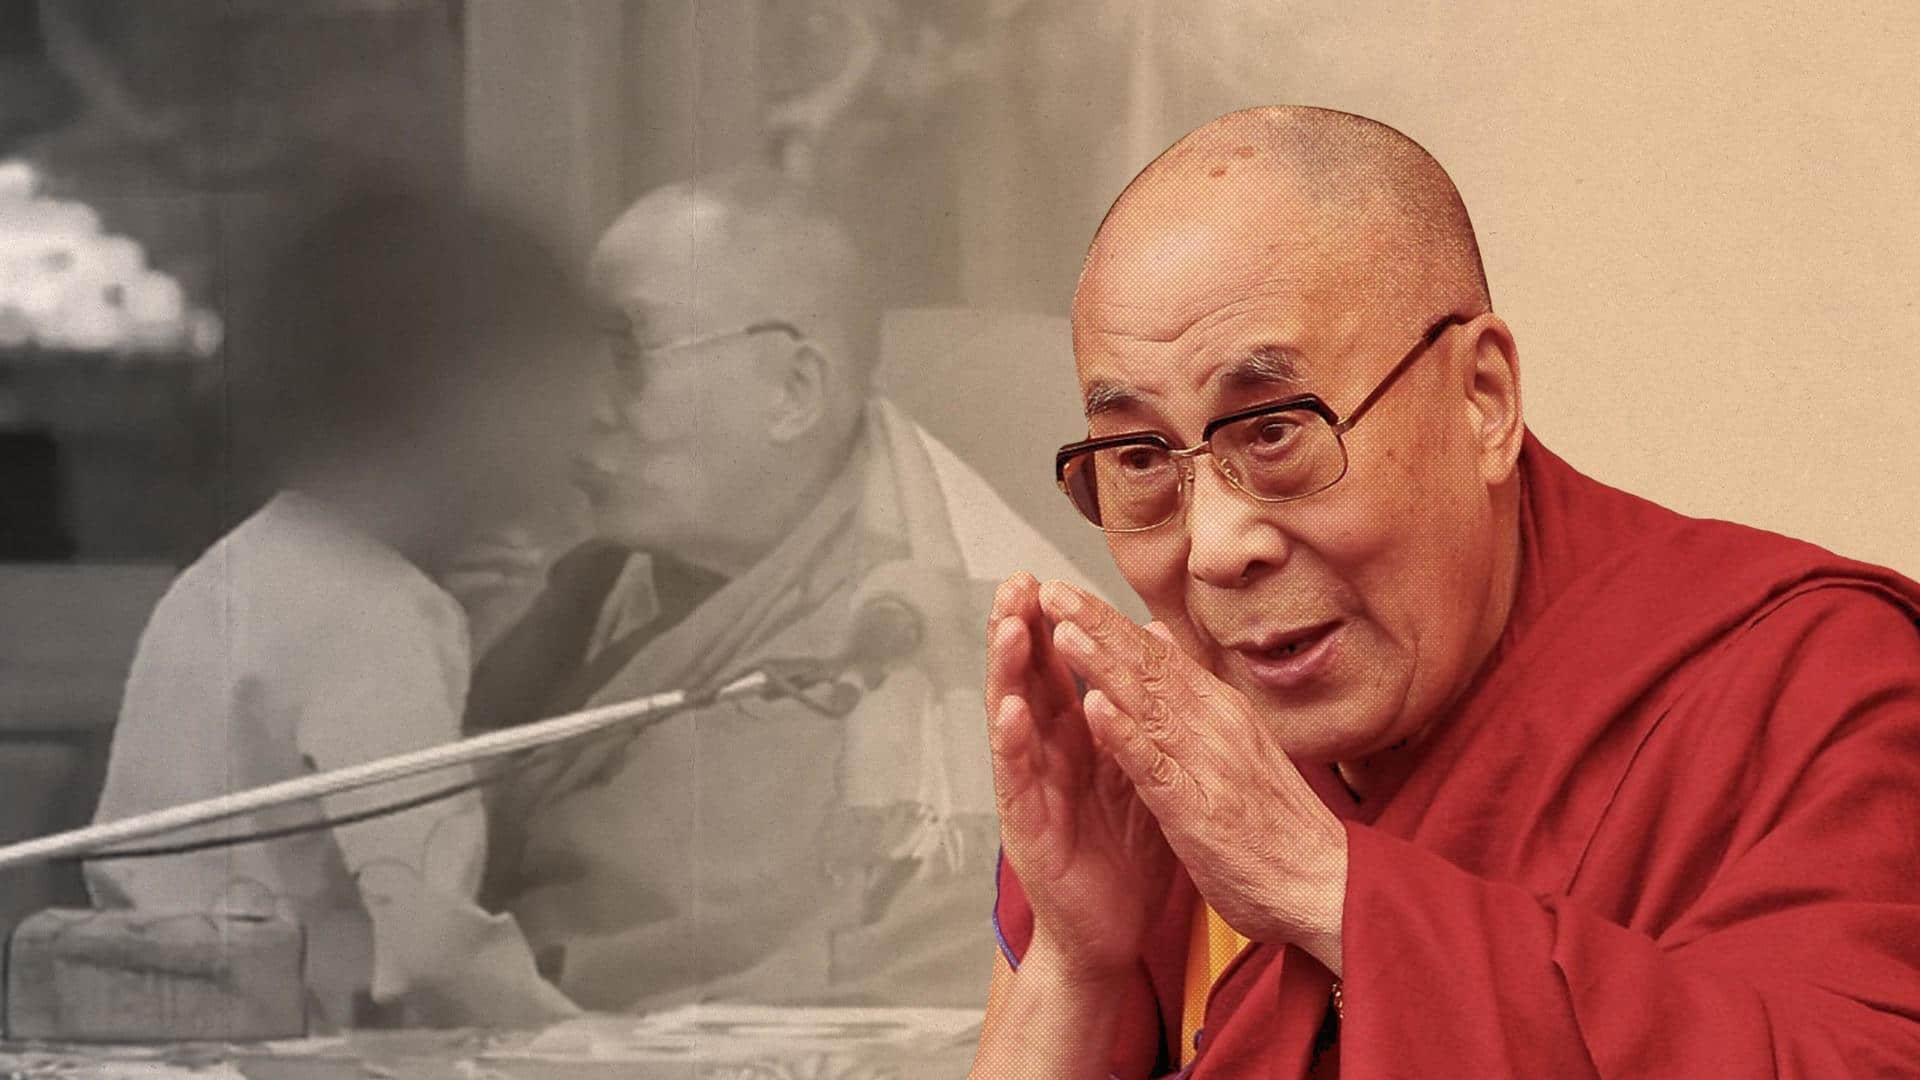 #NewsBytesExplainer: Why Buddhist spiritual leader Dalai Lama apologized